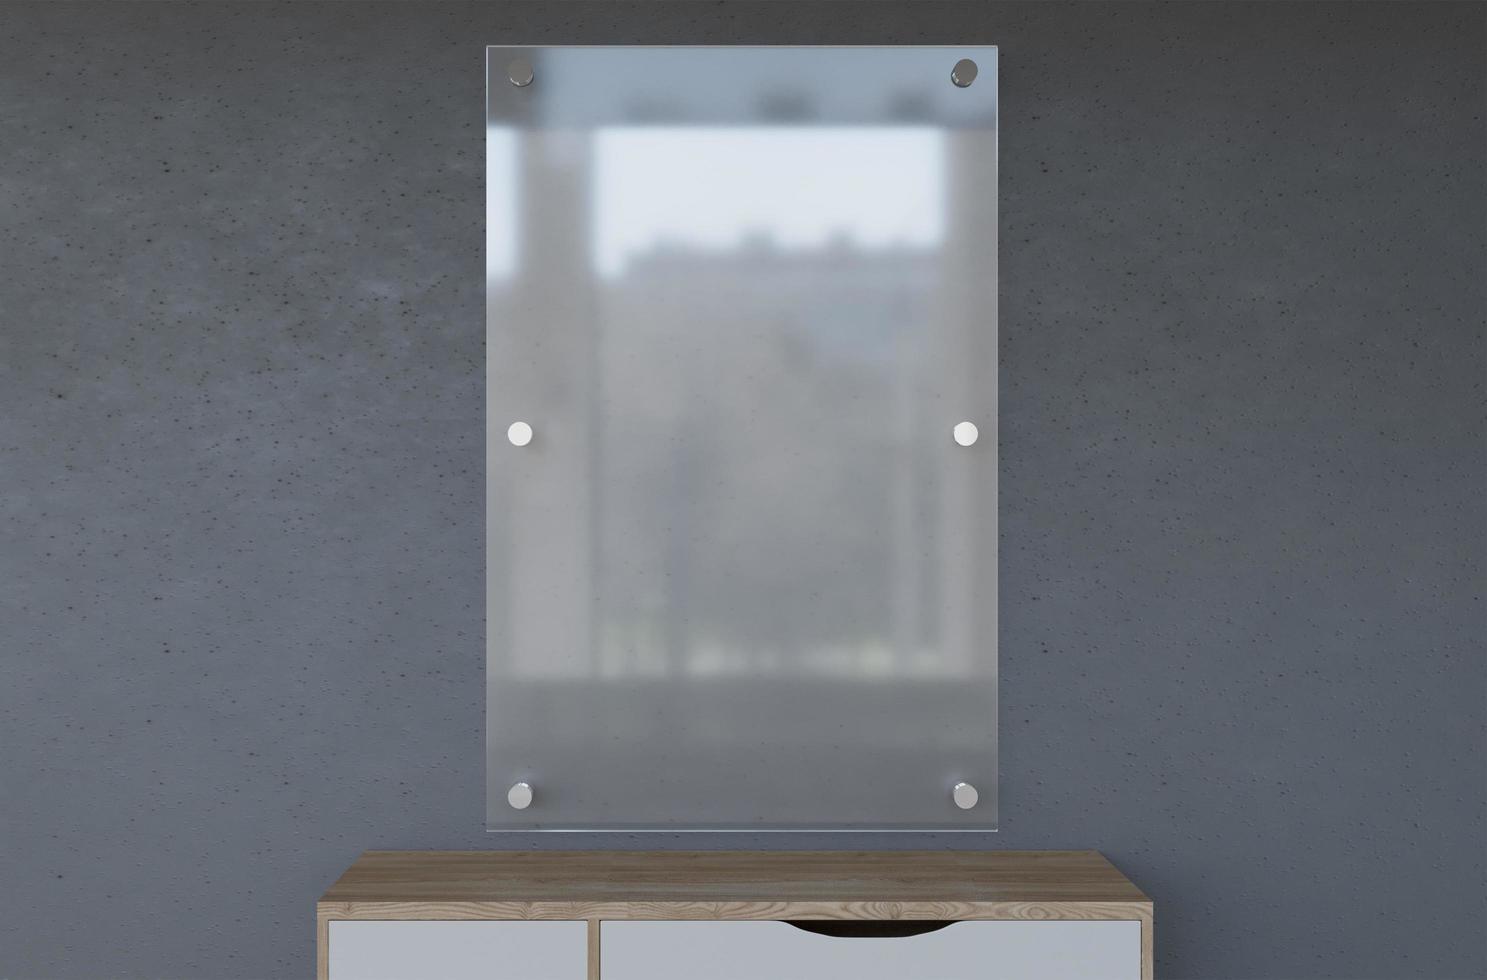 renderização 3d realista placa de vidro vazia sinalização de parede acrílica foto